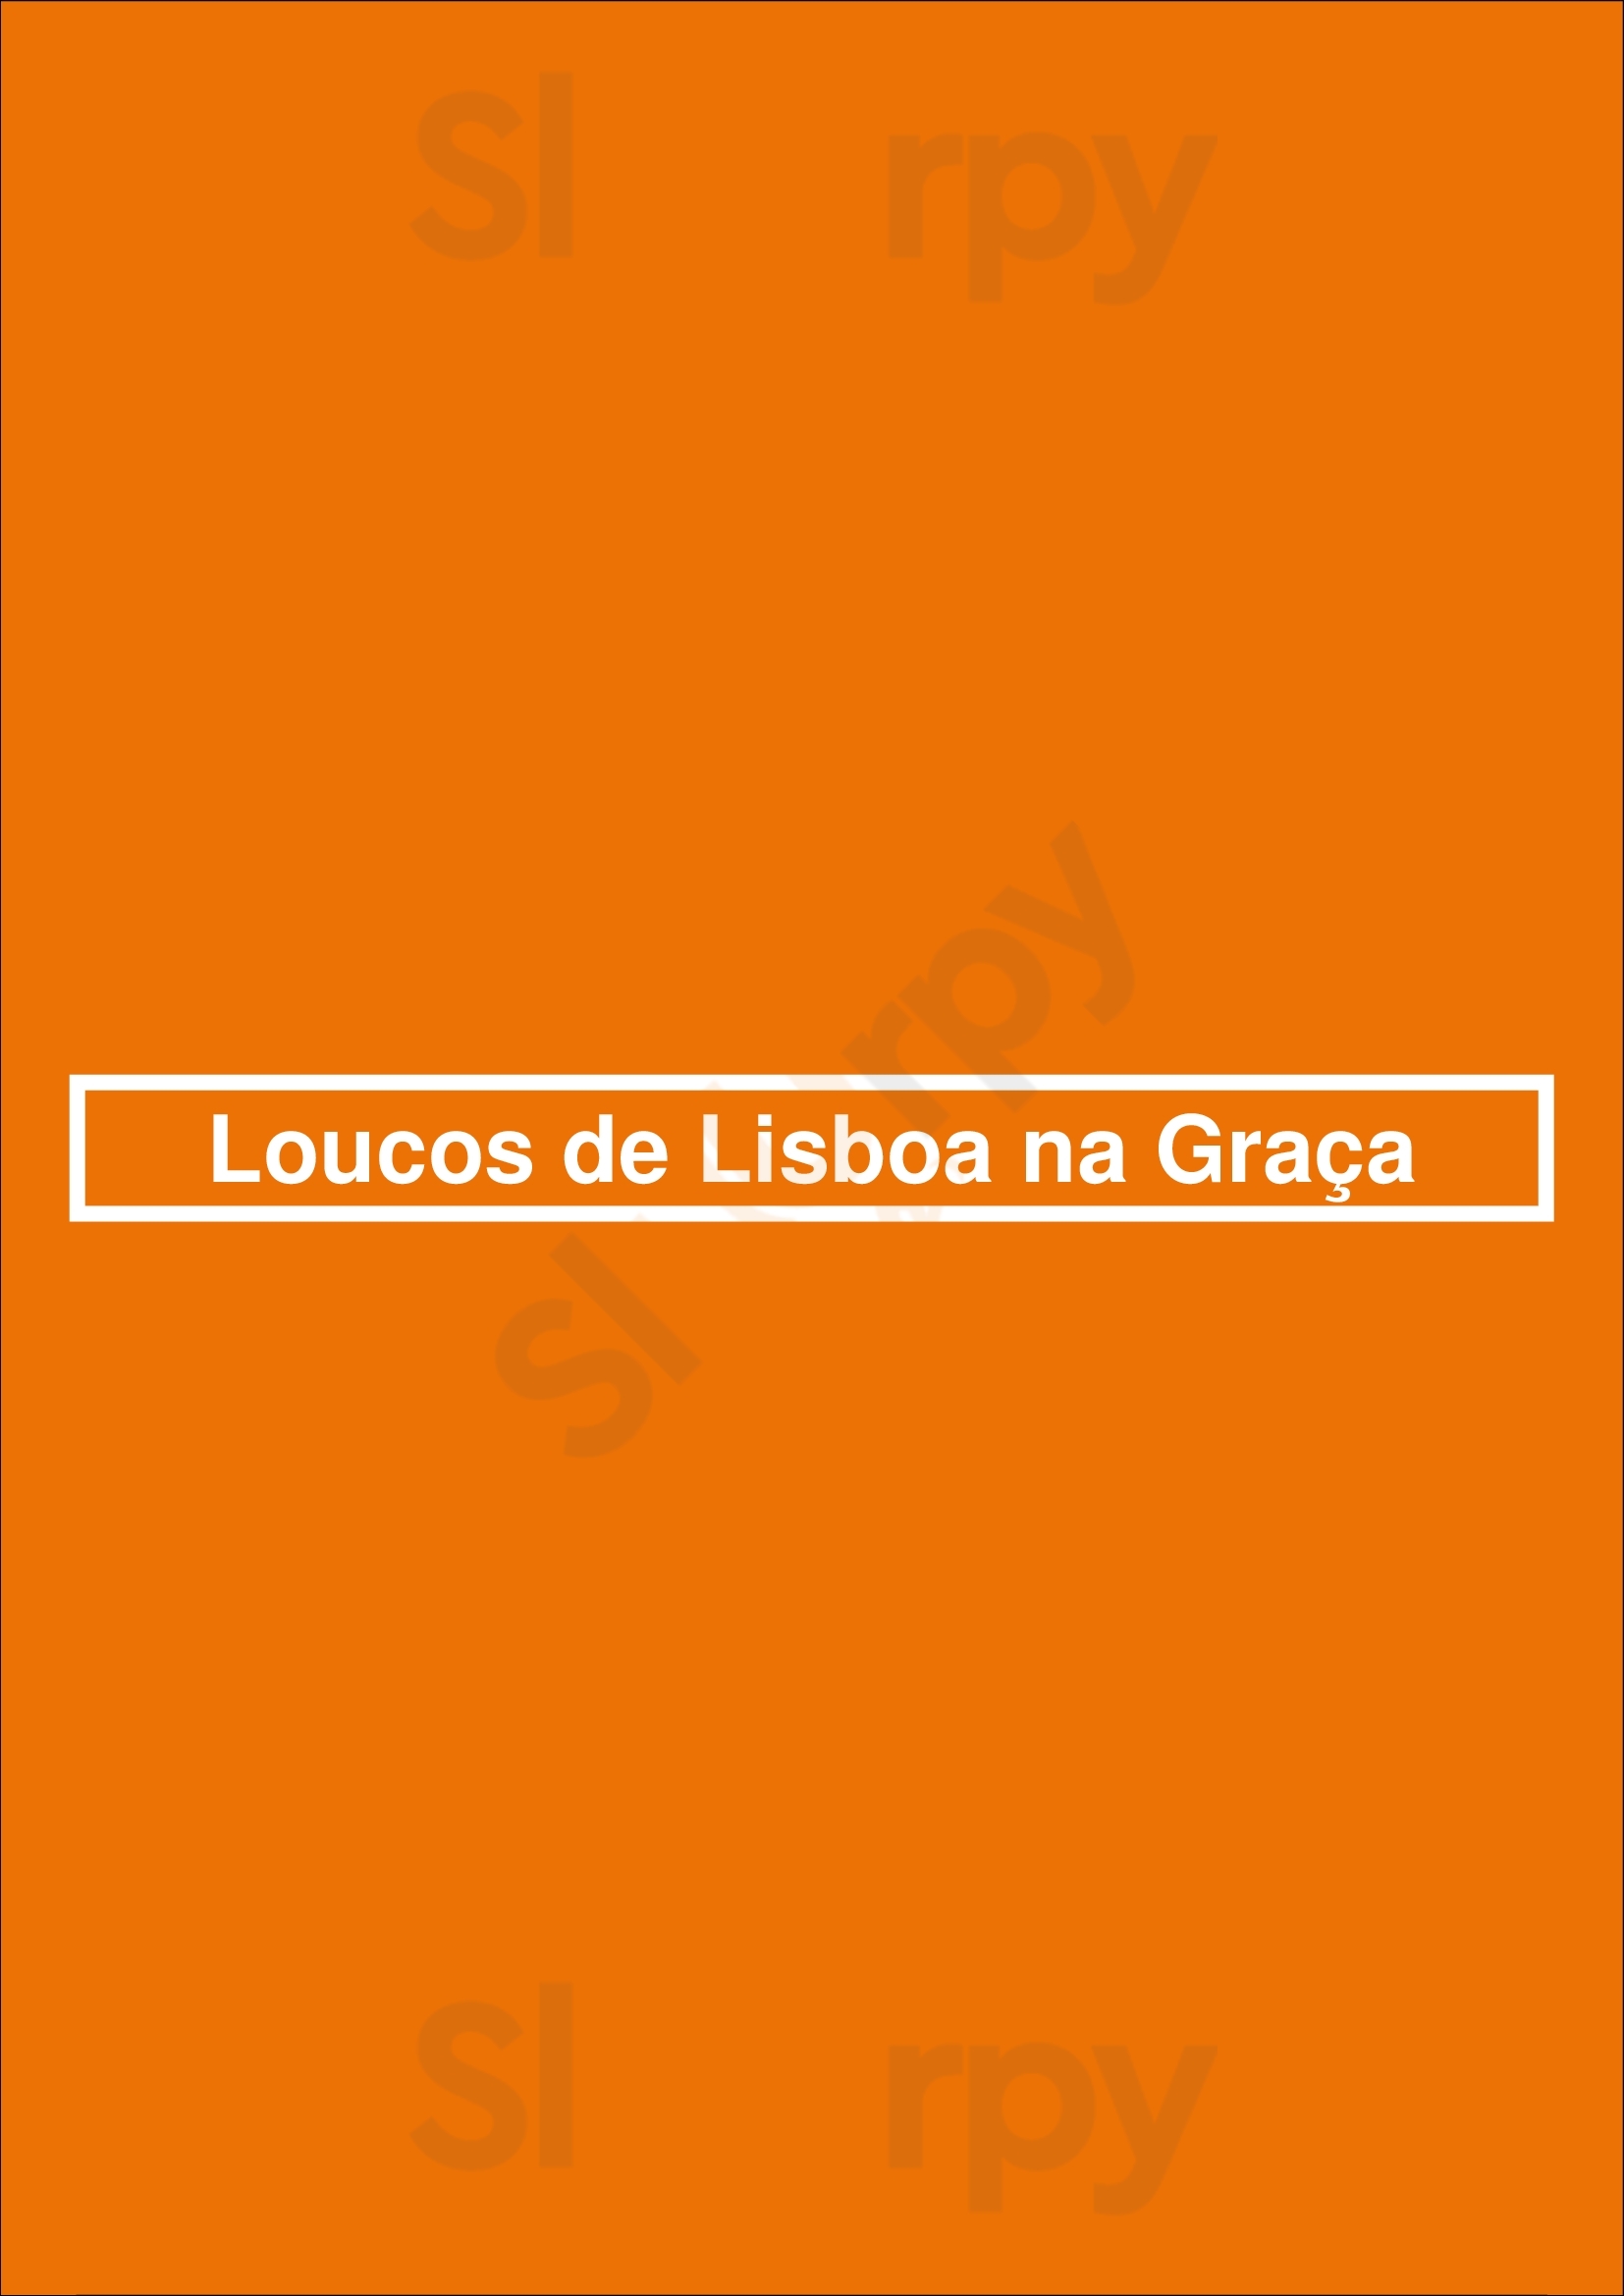 Loucos De Lisboa Na Graça Lisboa Menu - 1